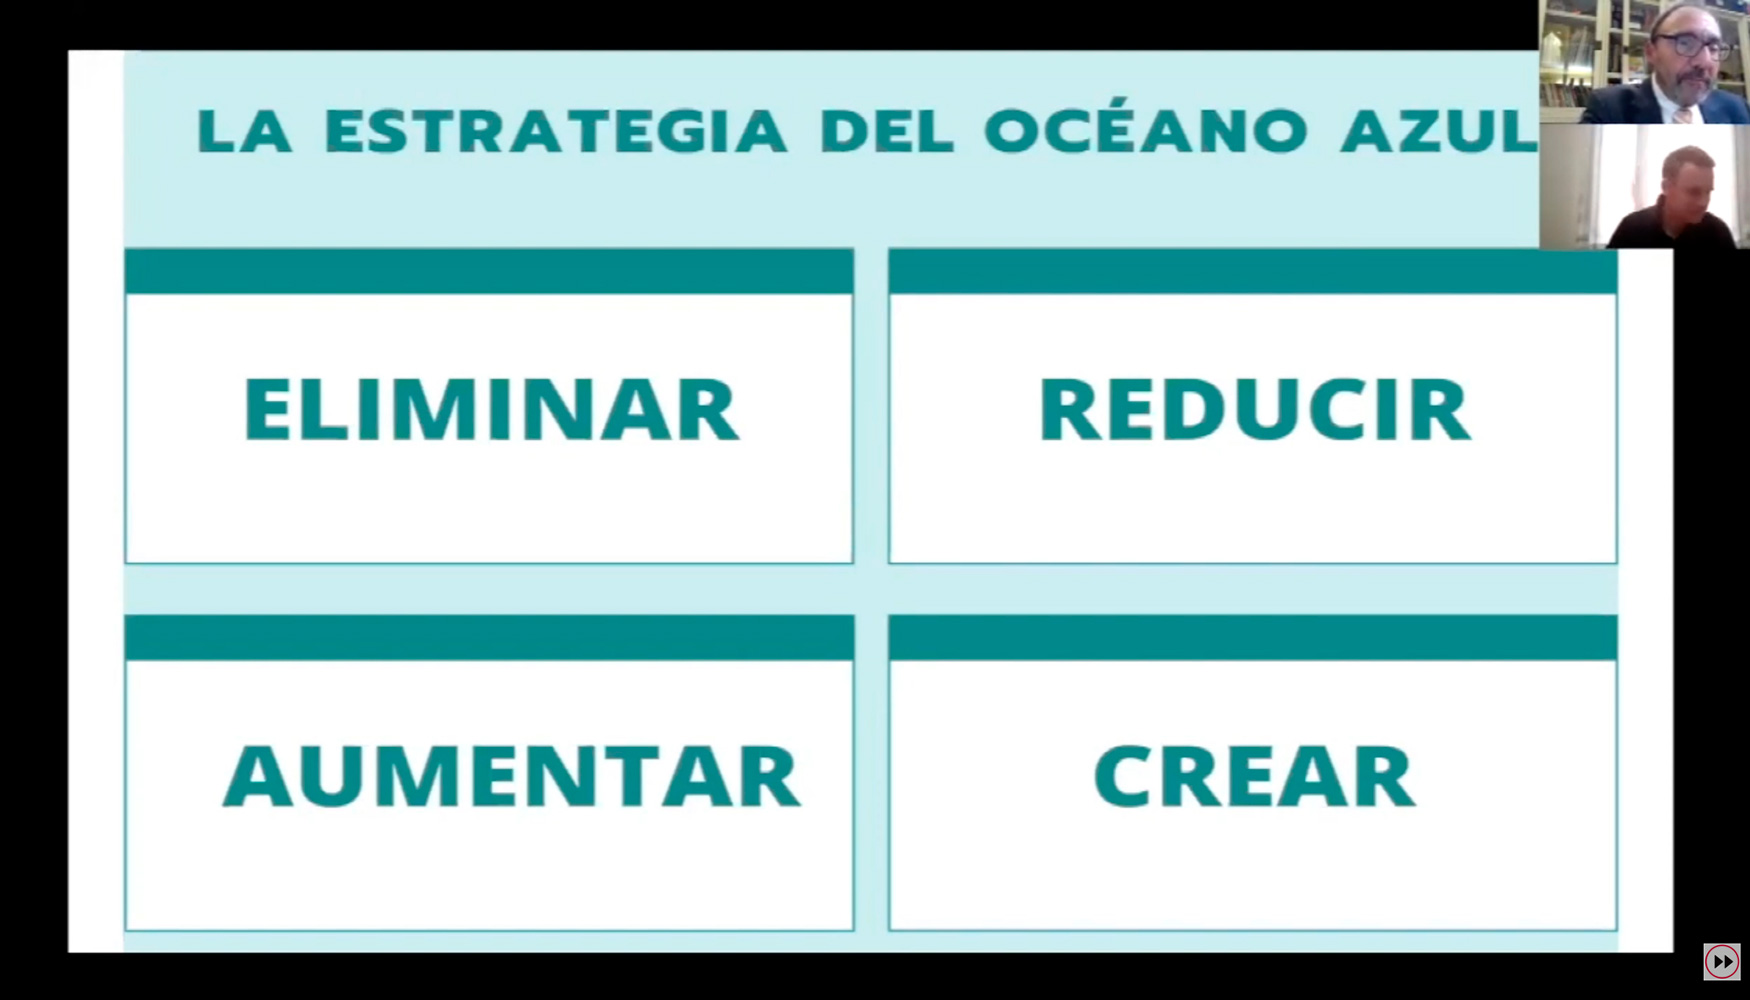 Jos Antonio Ortenga, Fundavin Vedruna, propone a los centros, a la hora de innovar, la estrategia del Ocano Azul...